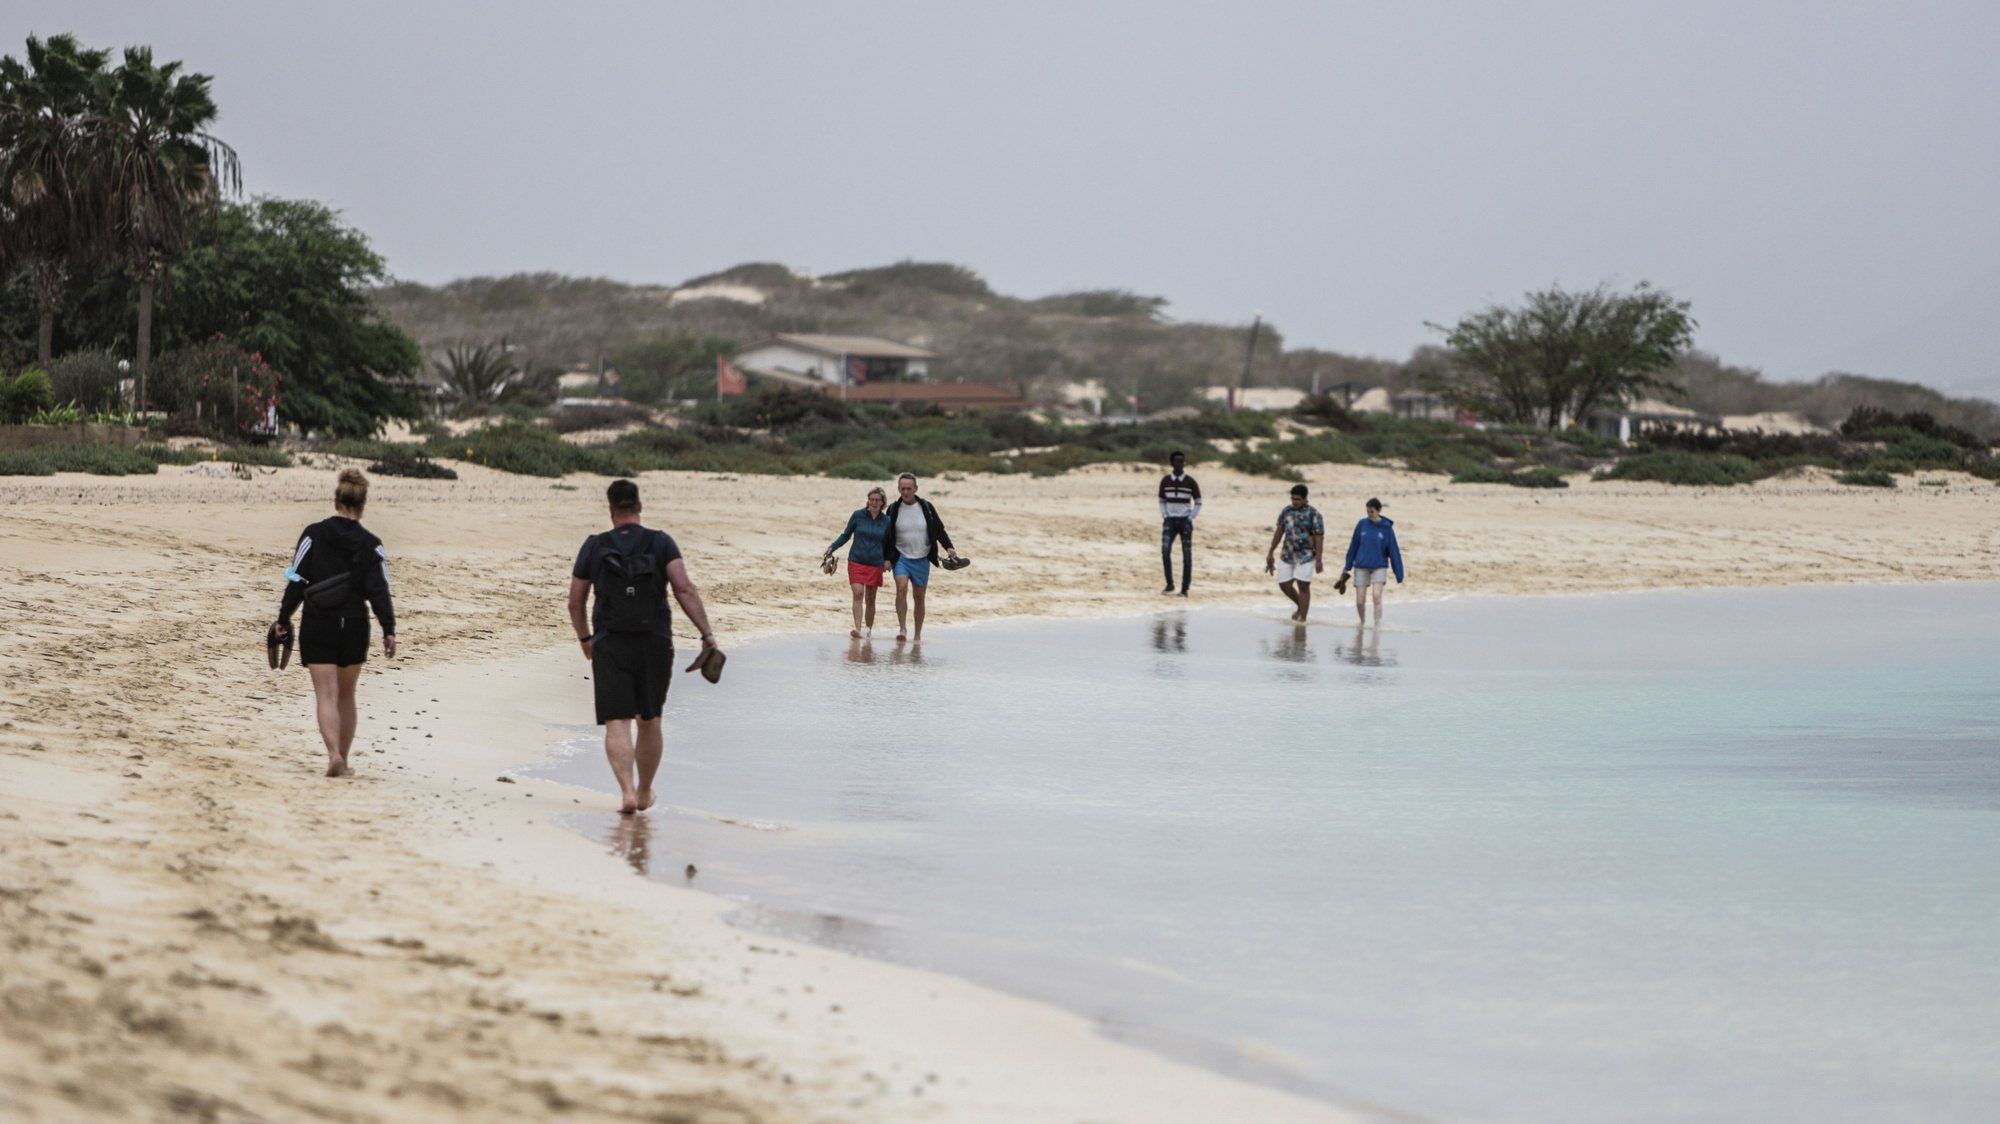 A ilha da Boa Vista registou há dois anos os primeiros casos de covid-19 em Cabo Verde, afetando turistas, e ainda vive com as consequências da sua ausência, embora o autarca local admita que o “sufoco já passou”, 15 fevereiro 2022. ELTON MONTEIRO/LUSA